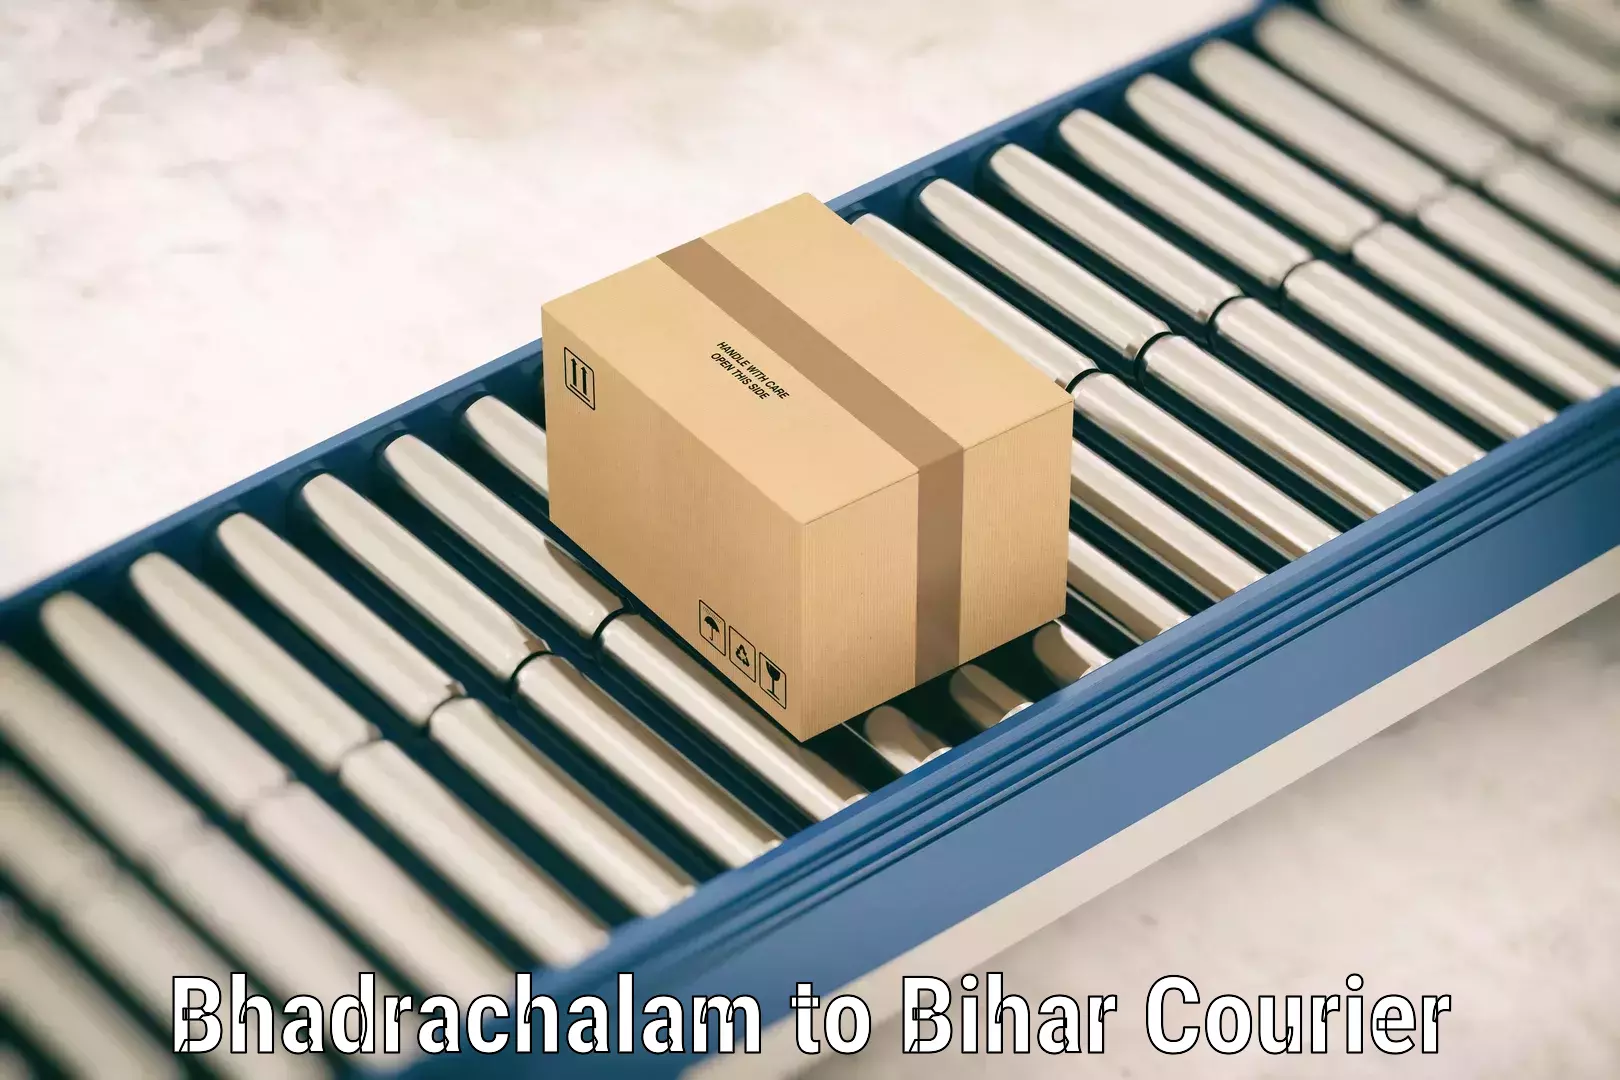 Luggage delivery app Bhadrachalam to Udakishanganj